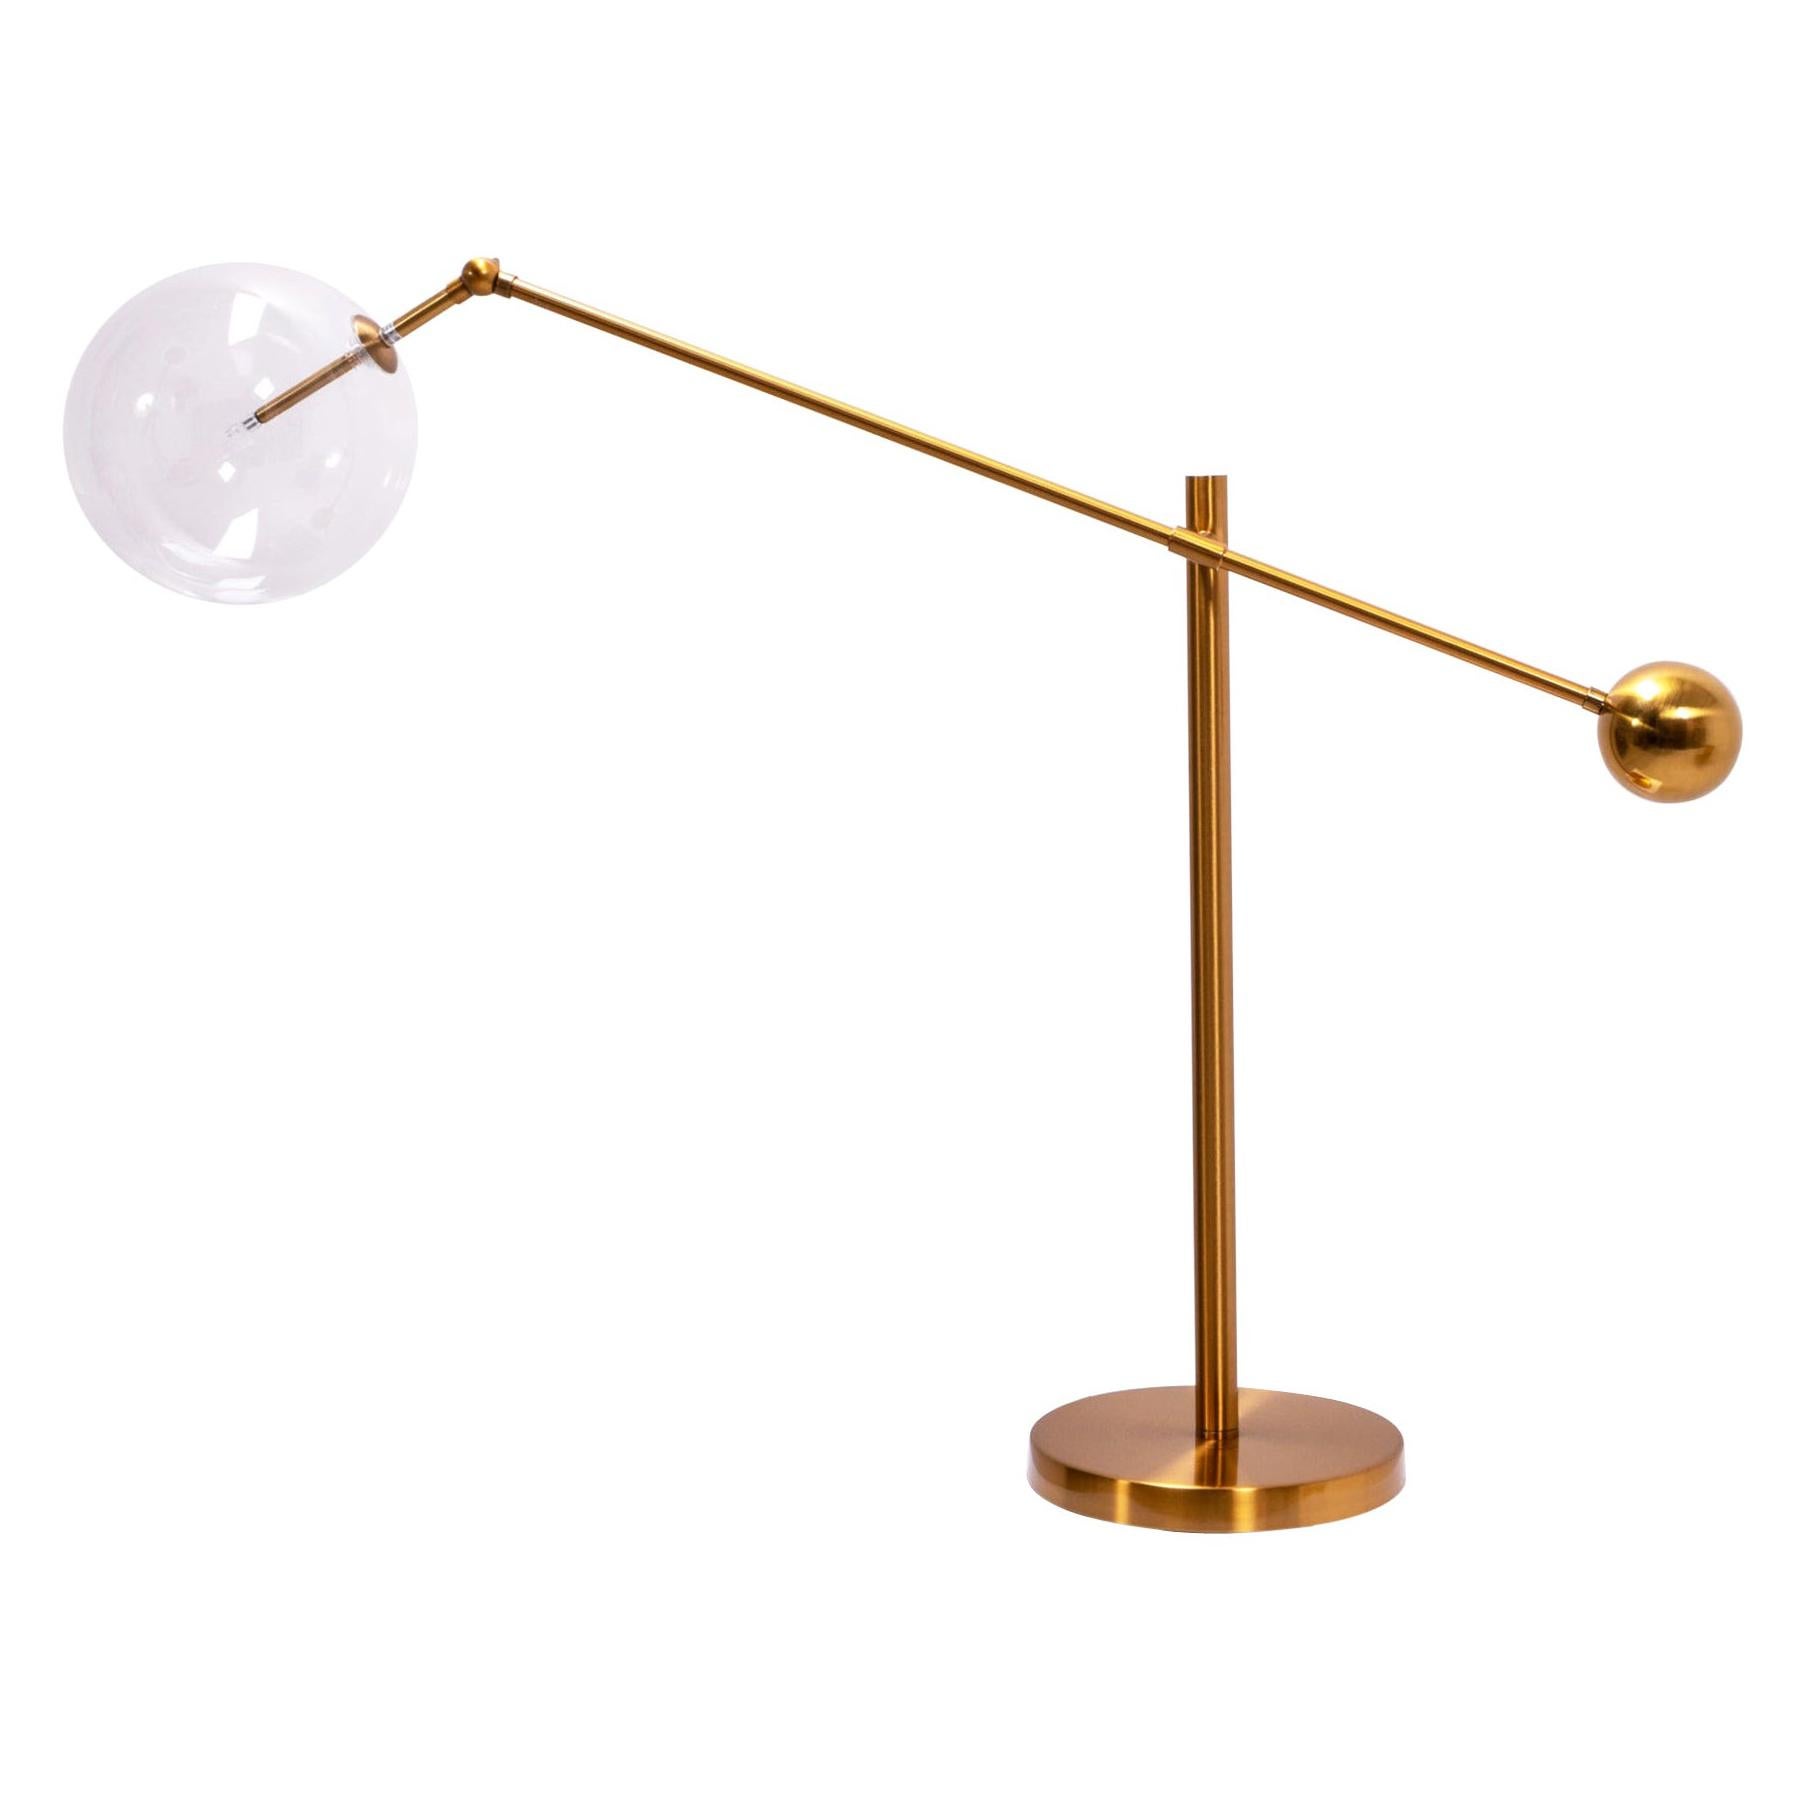 Midcentury Italian Style Brass Globe Table Lamp